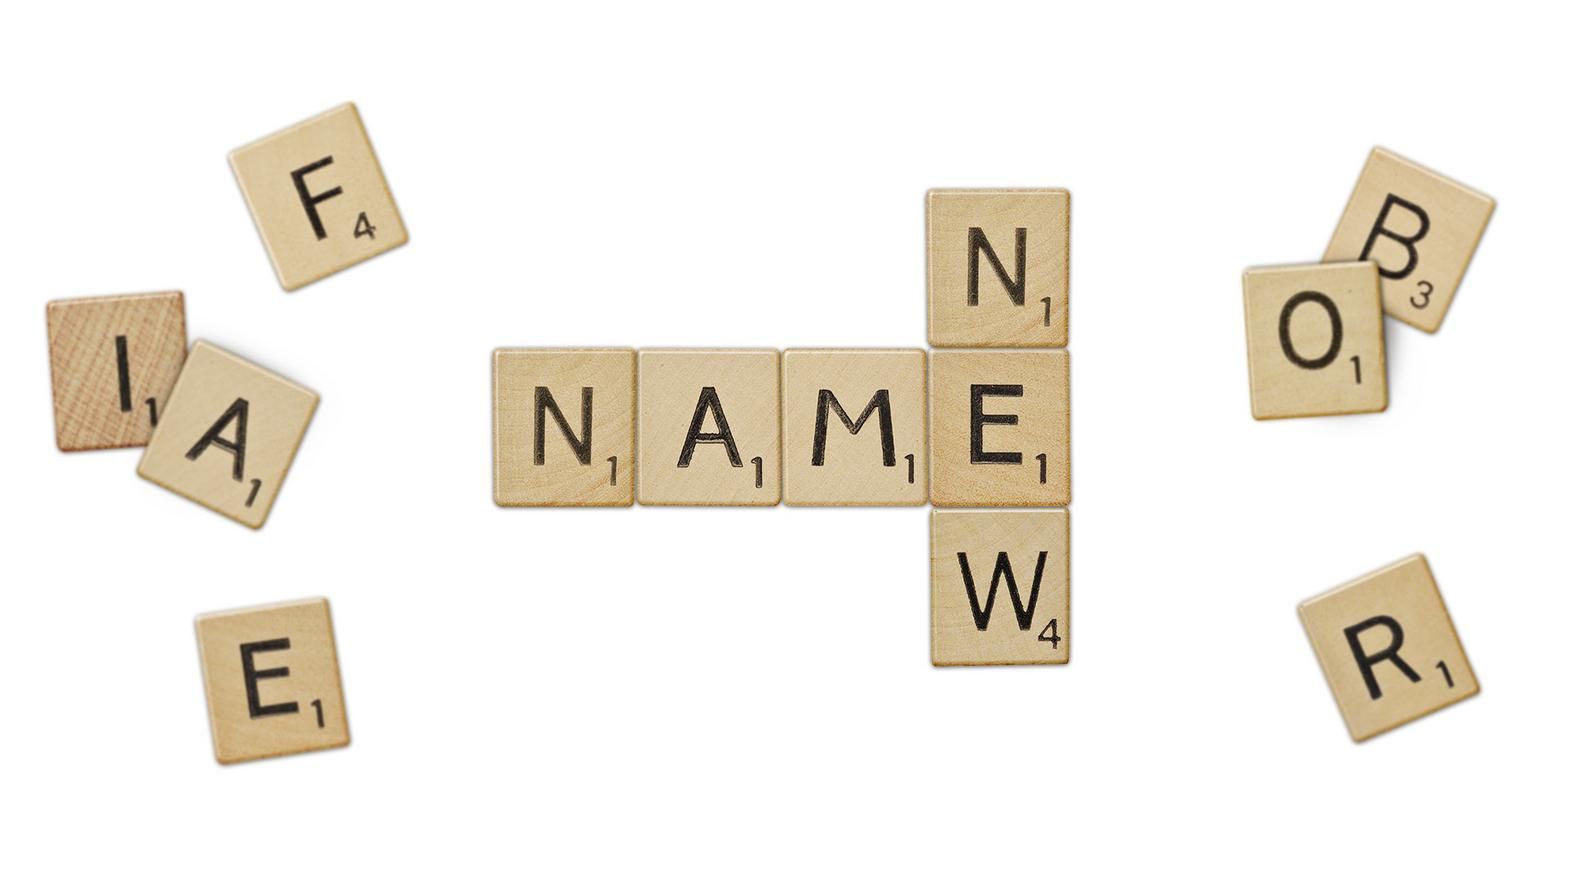 Om navnebrif, navneutvikling og merkenavn